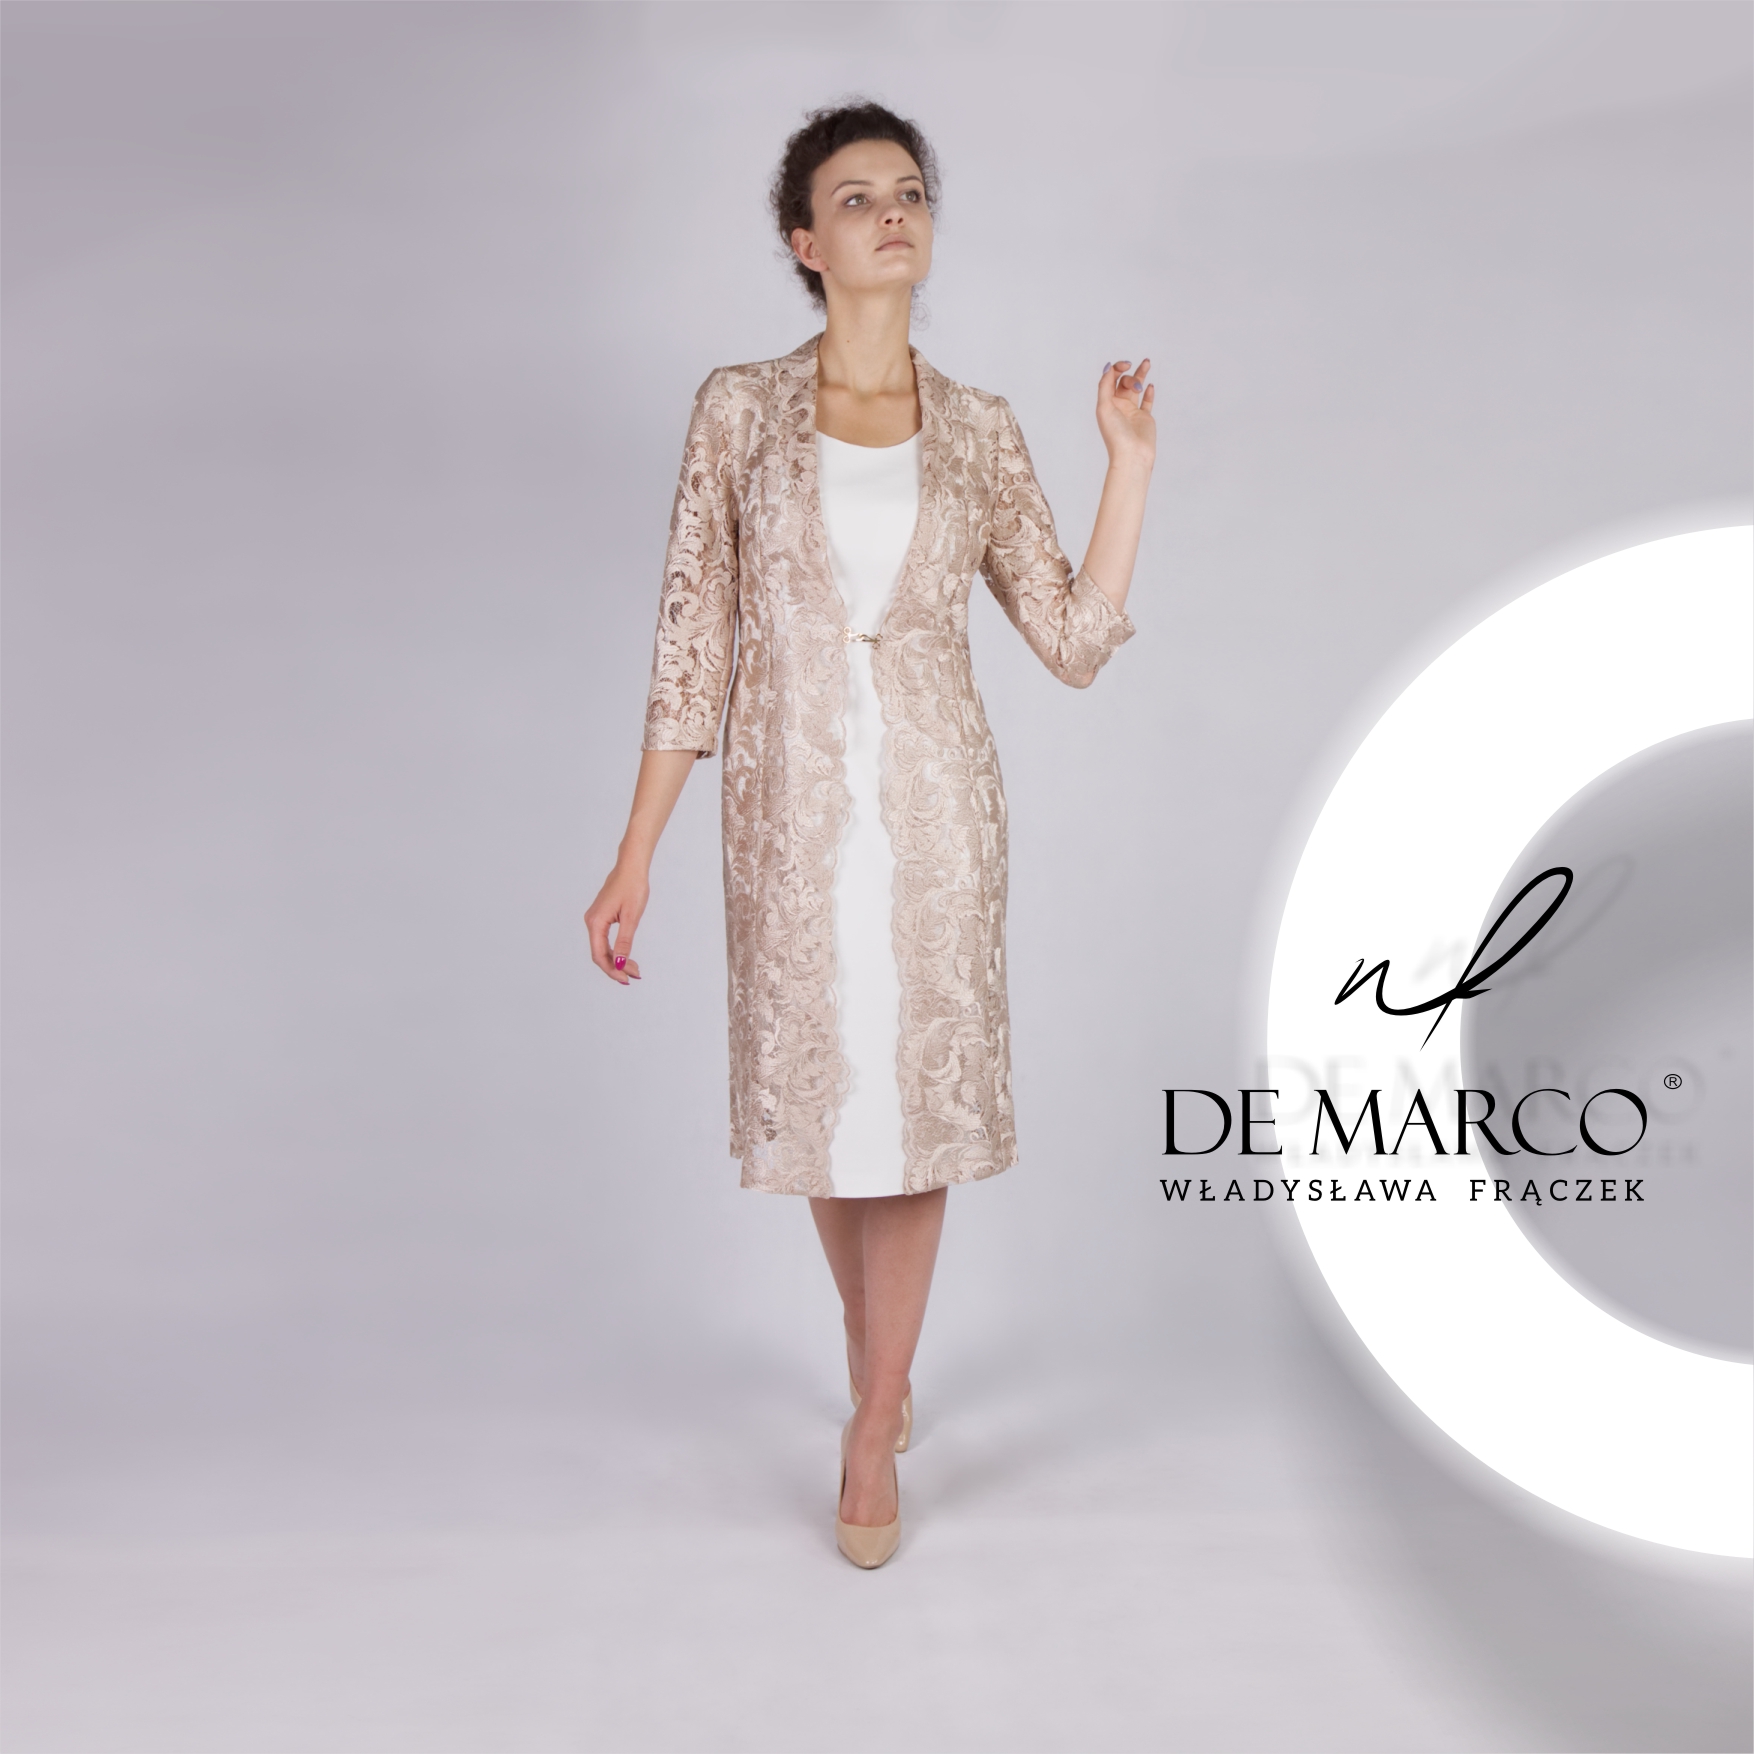 Komplet sukienka z płaszczykiem z koronki to idealna stylizacja dla matki wesela. Zapraszam do sklepu internetowego De Marco. Szyjemy na miarę ekskluzywne zestawy na wesele. 